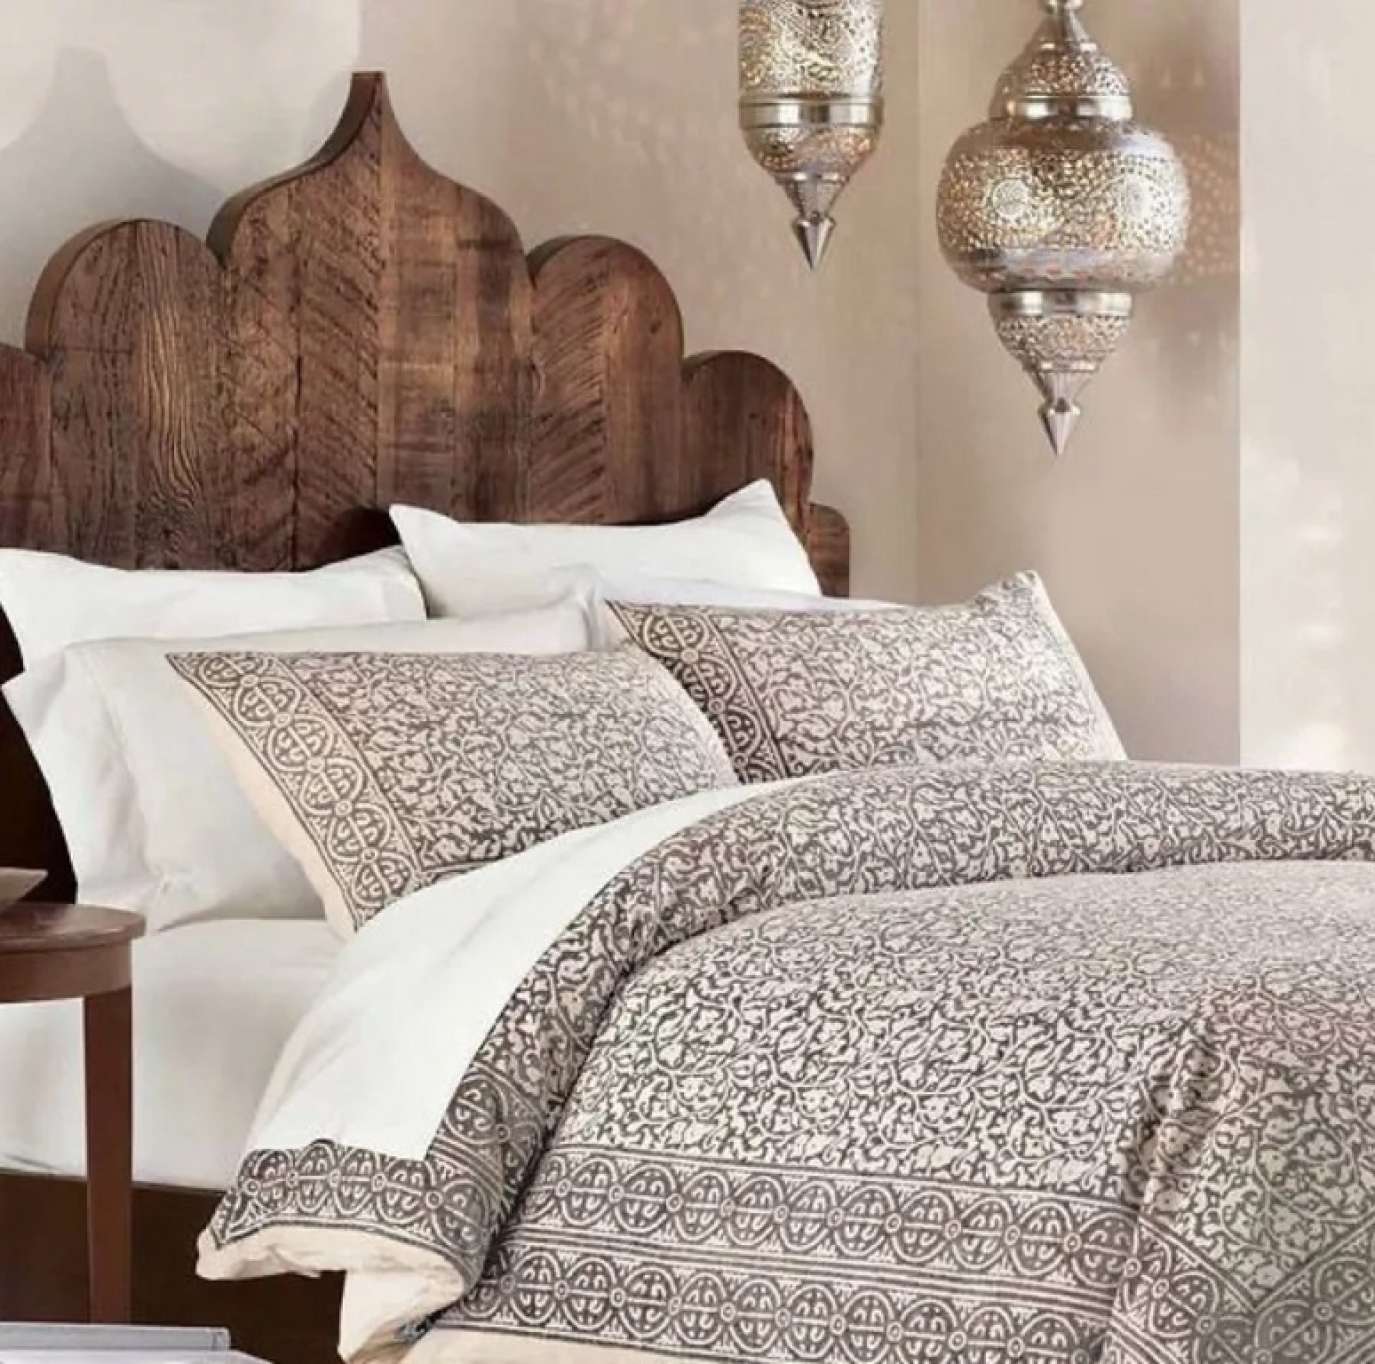 ديكورات مغربيّة مُنسّقة في غرفة النوم لإثراء مظهرها